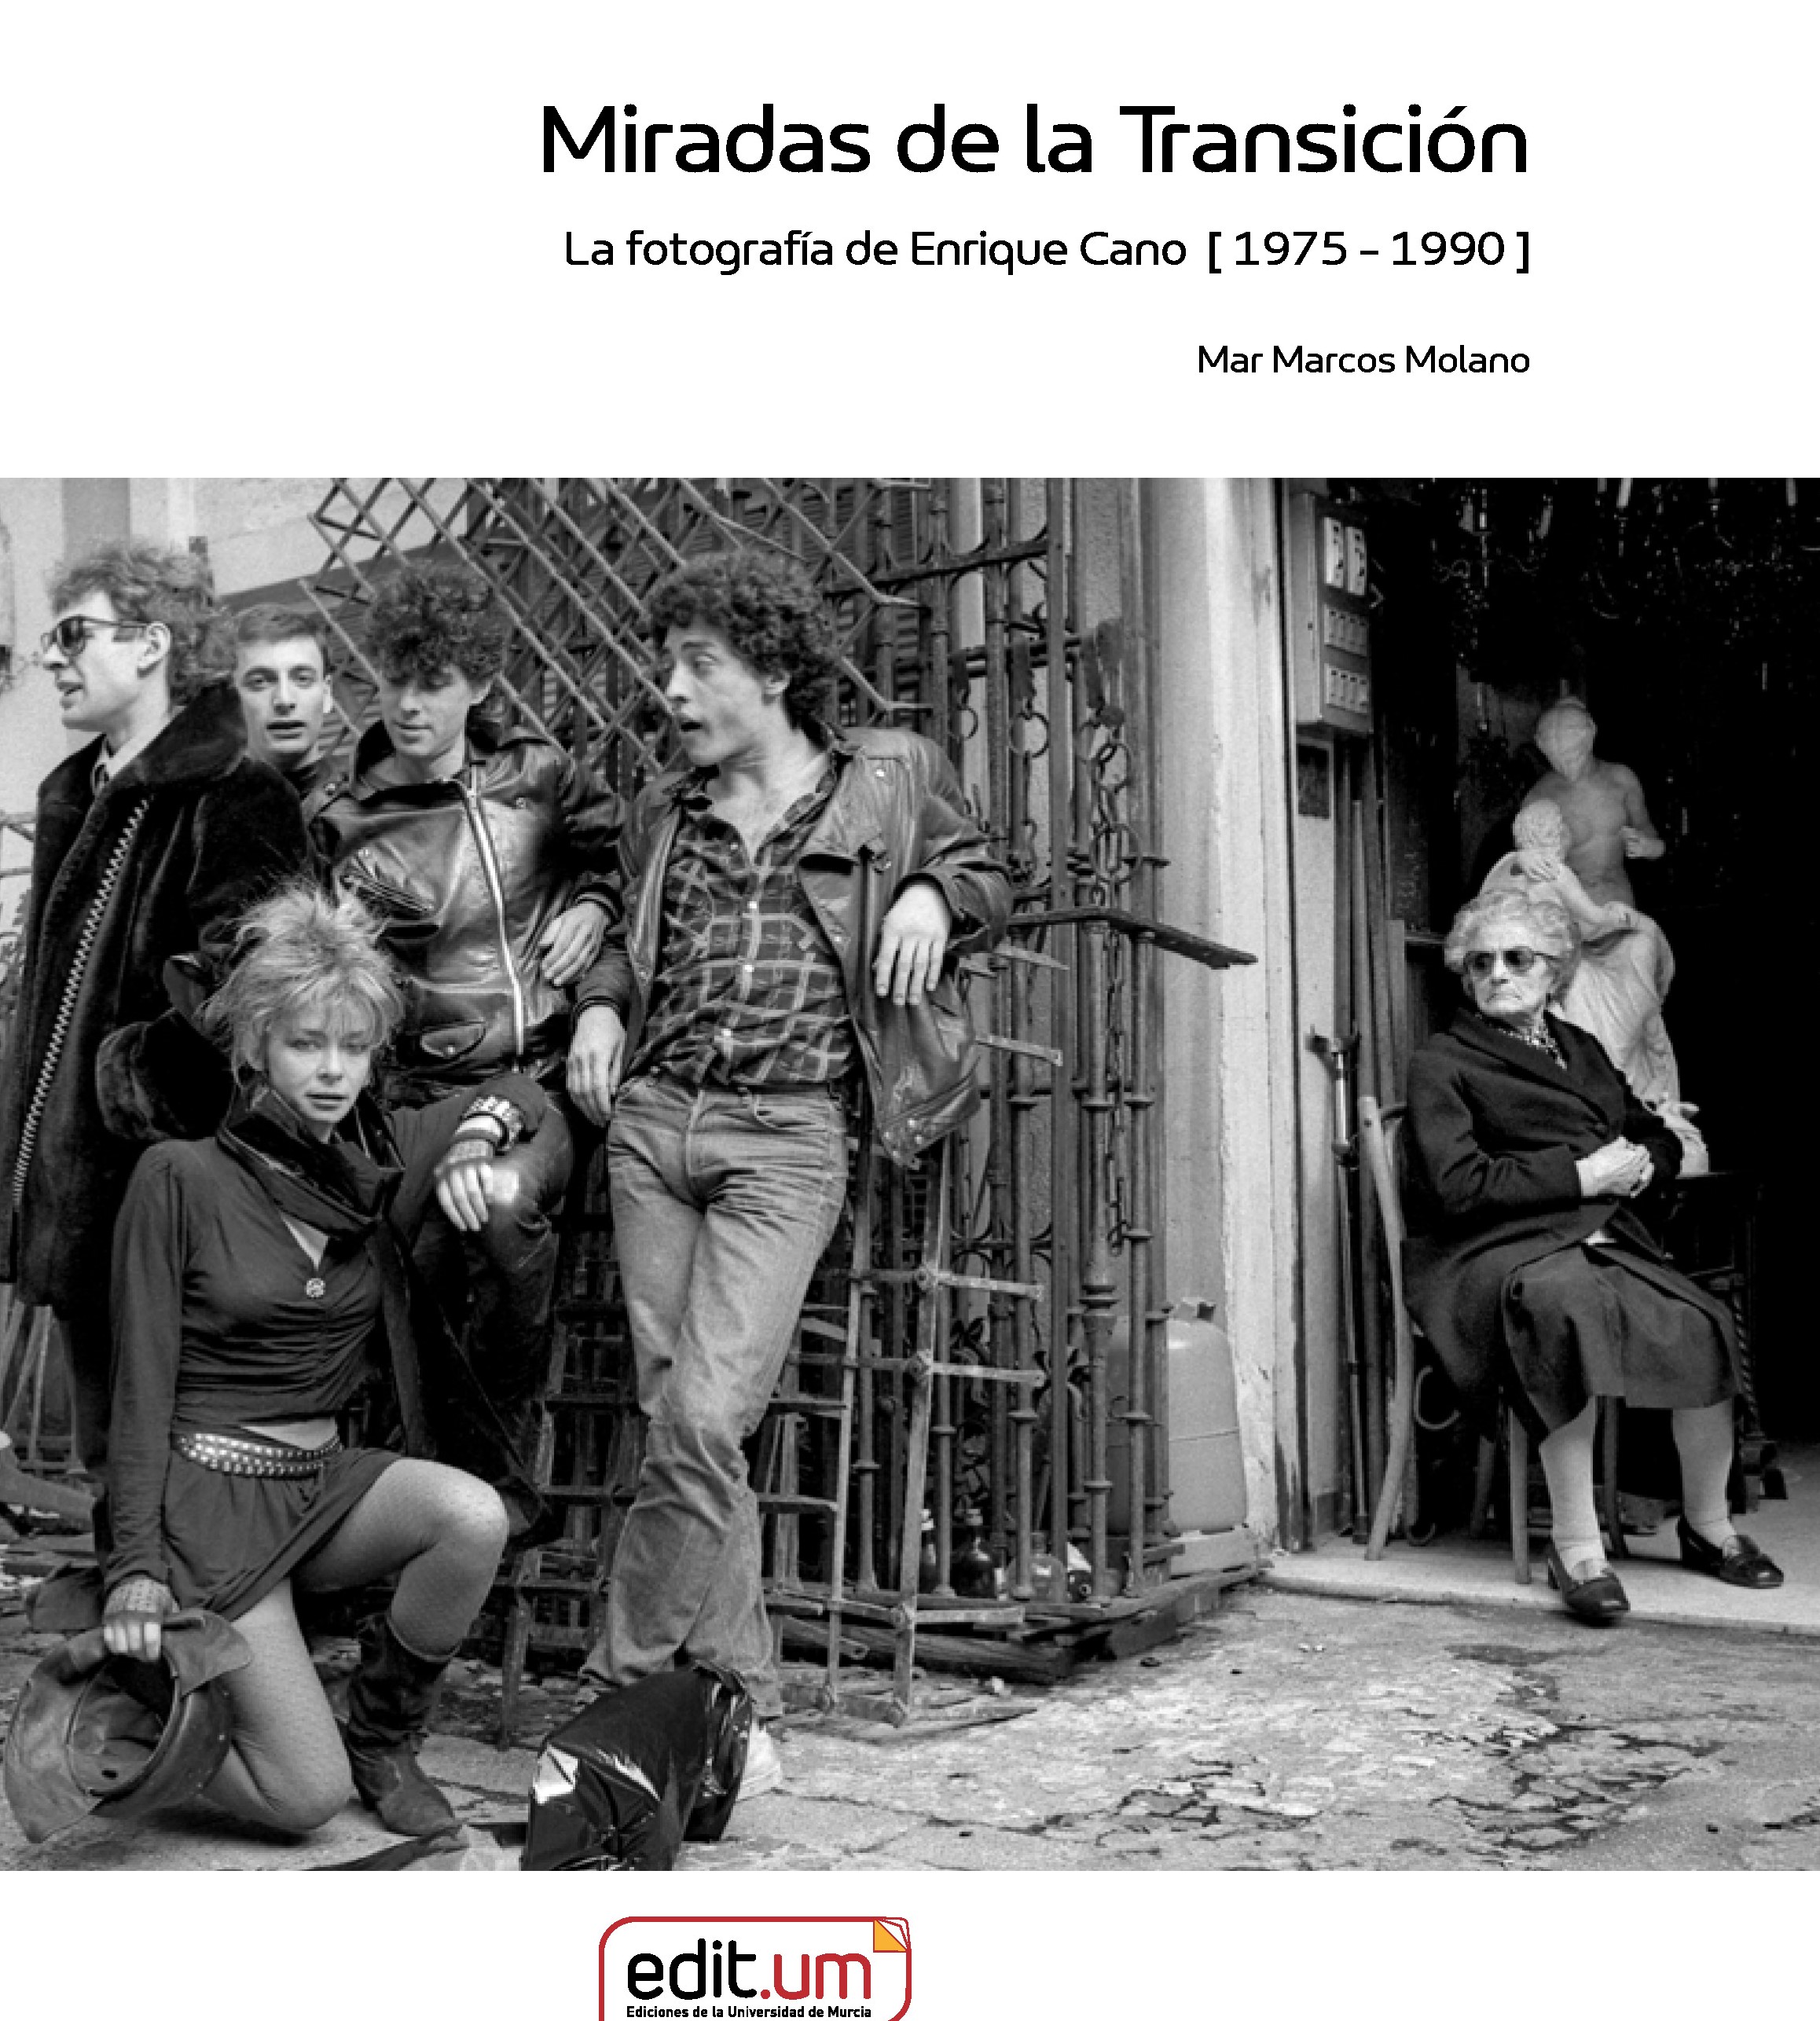 Imagen de portada del libro Miradas de la Transición. La fotografía de Enrique Cano [ 1975 - 1990 ]